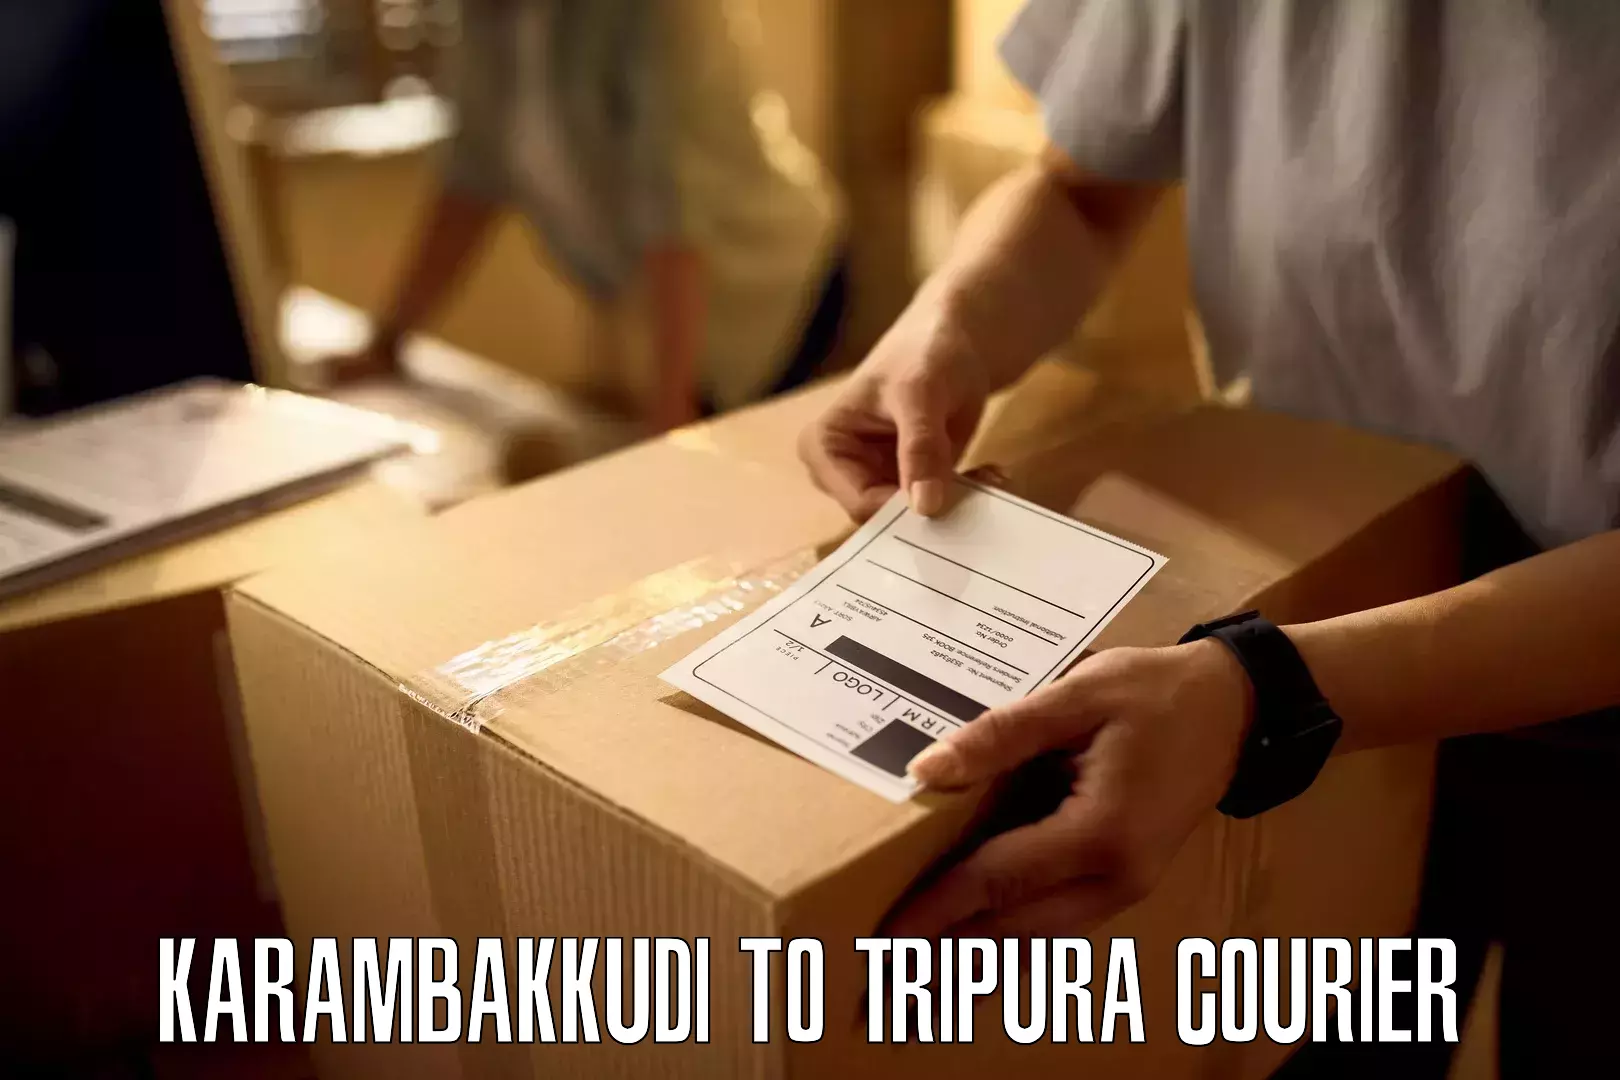 Large package courier in Karambakkudi to Dharmanagar